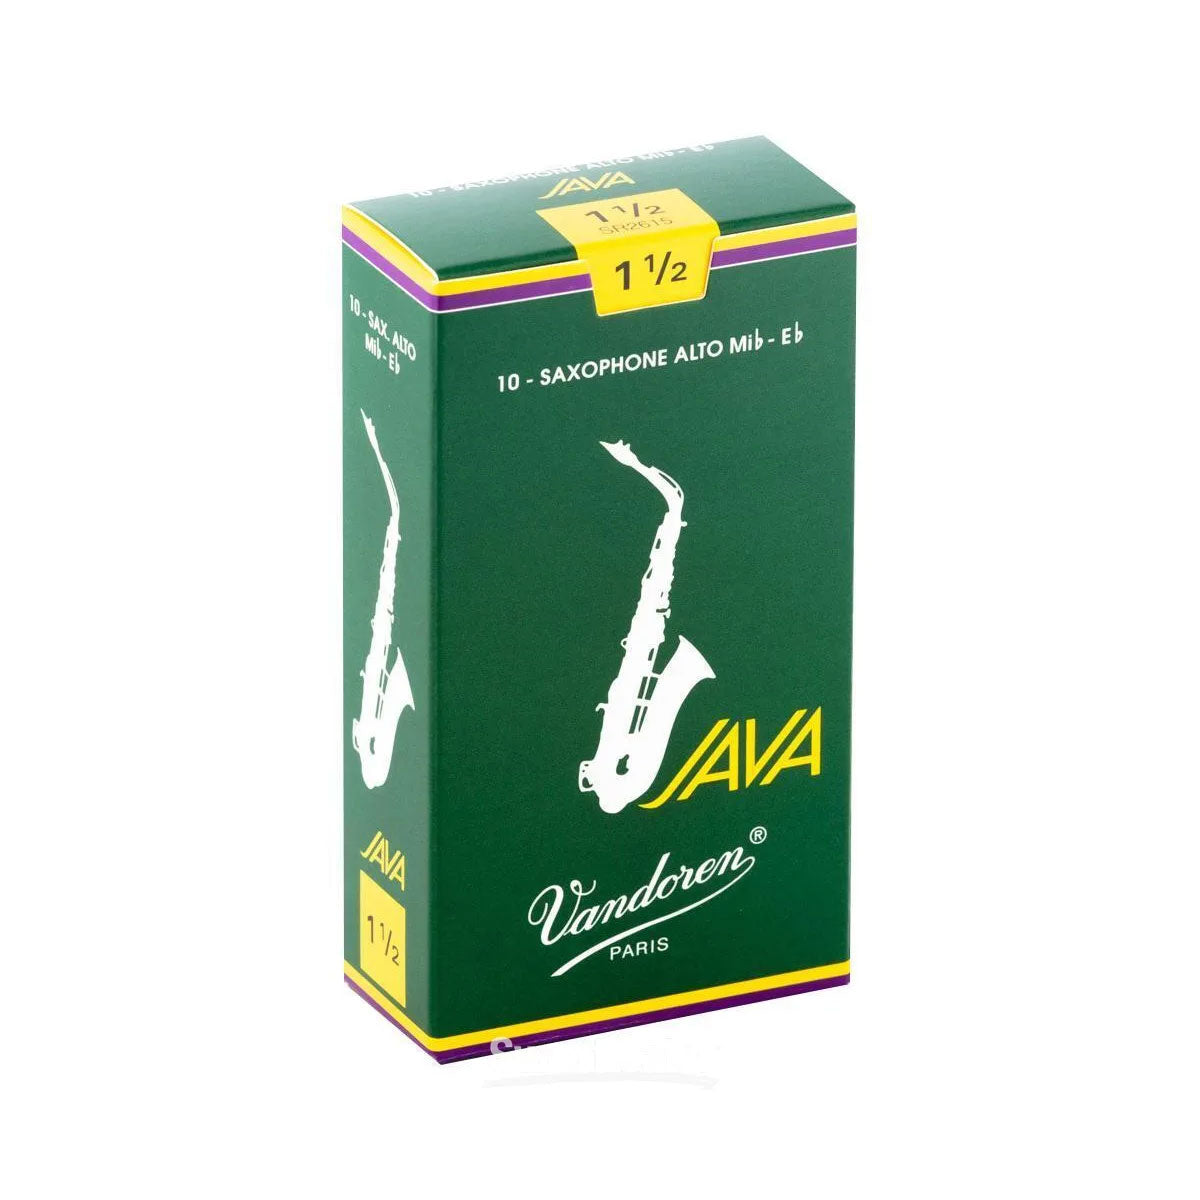 Vandoren Java Alto Sax Reeds 1.5 - Per Box 10